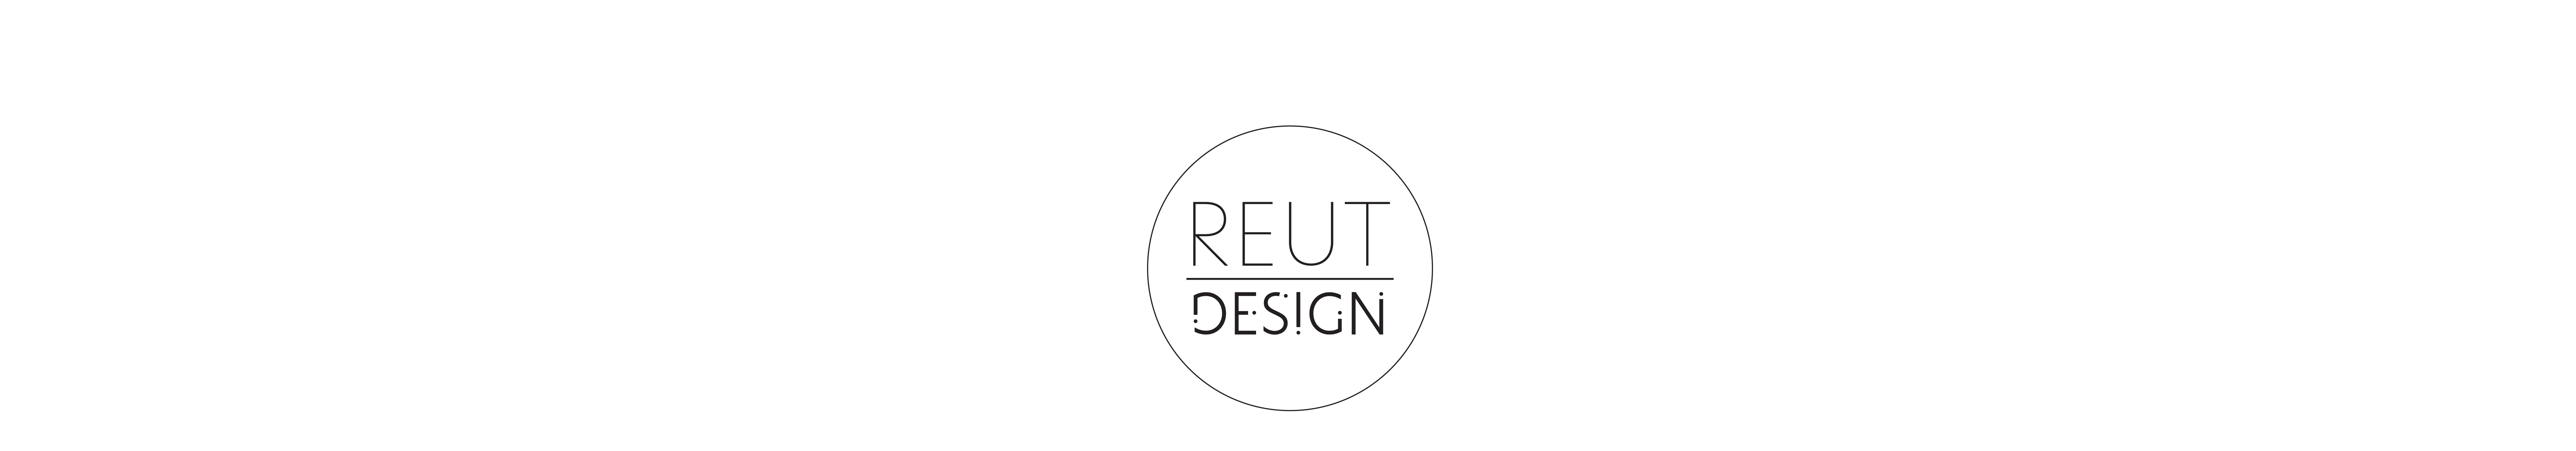 Reut (H) Pines's profile banner